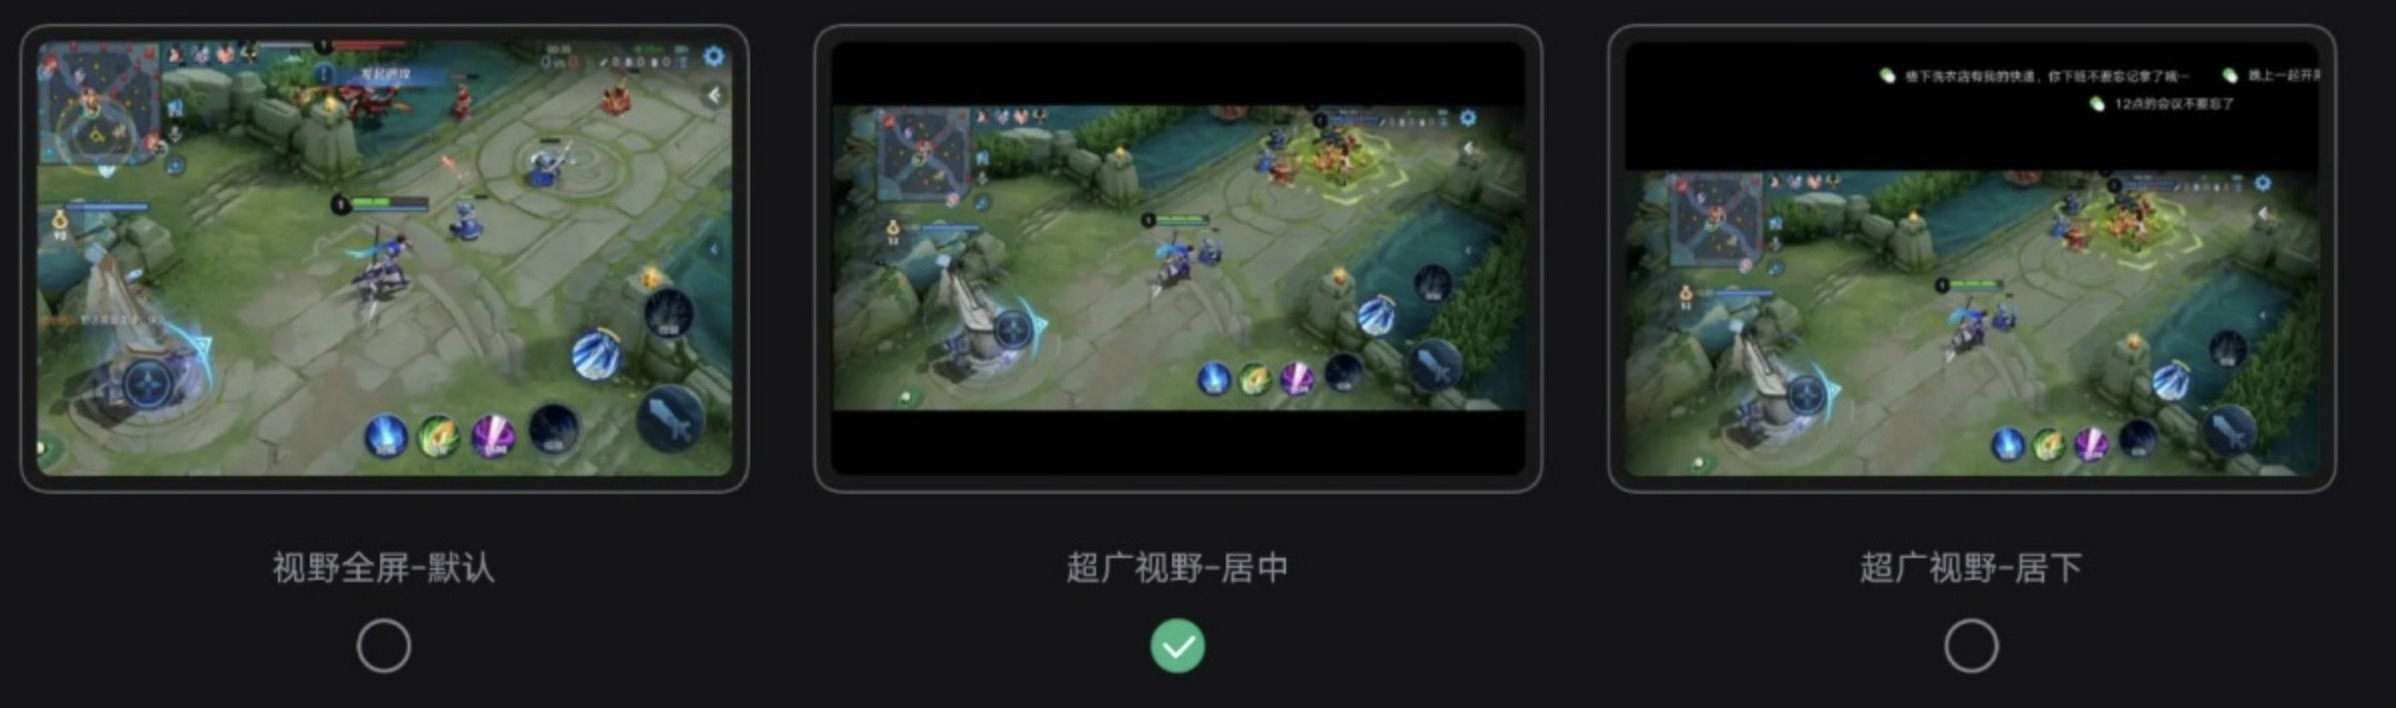 Trois types d'affichage d'écran seront proposés sur la Lenovo Legion Y700 // Source : Weibo / Lenovo